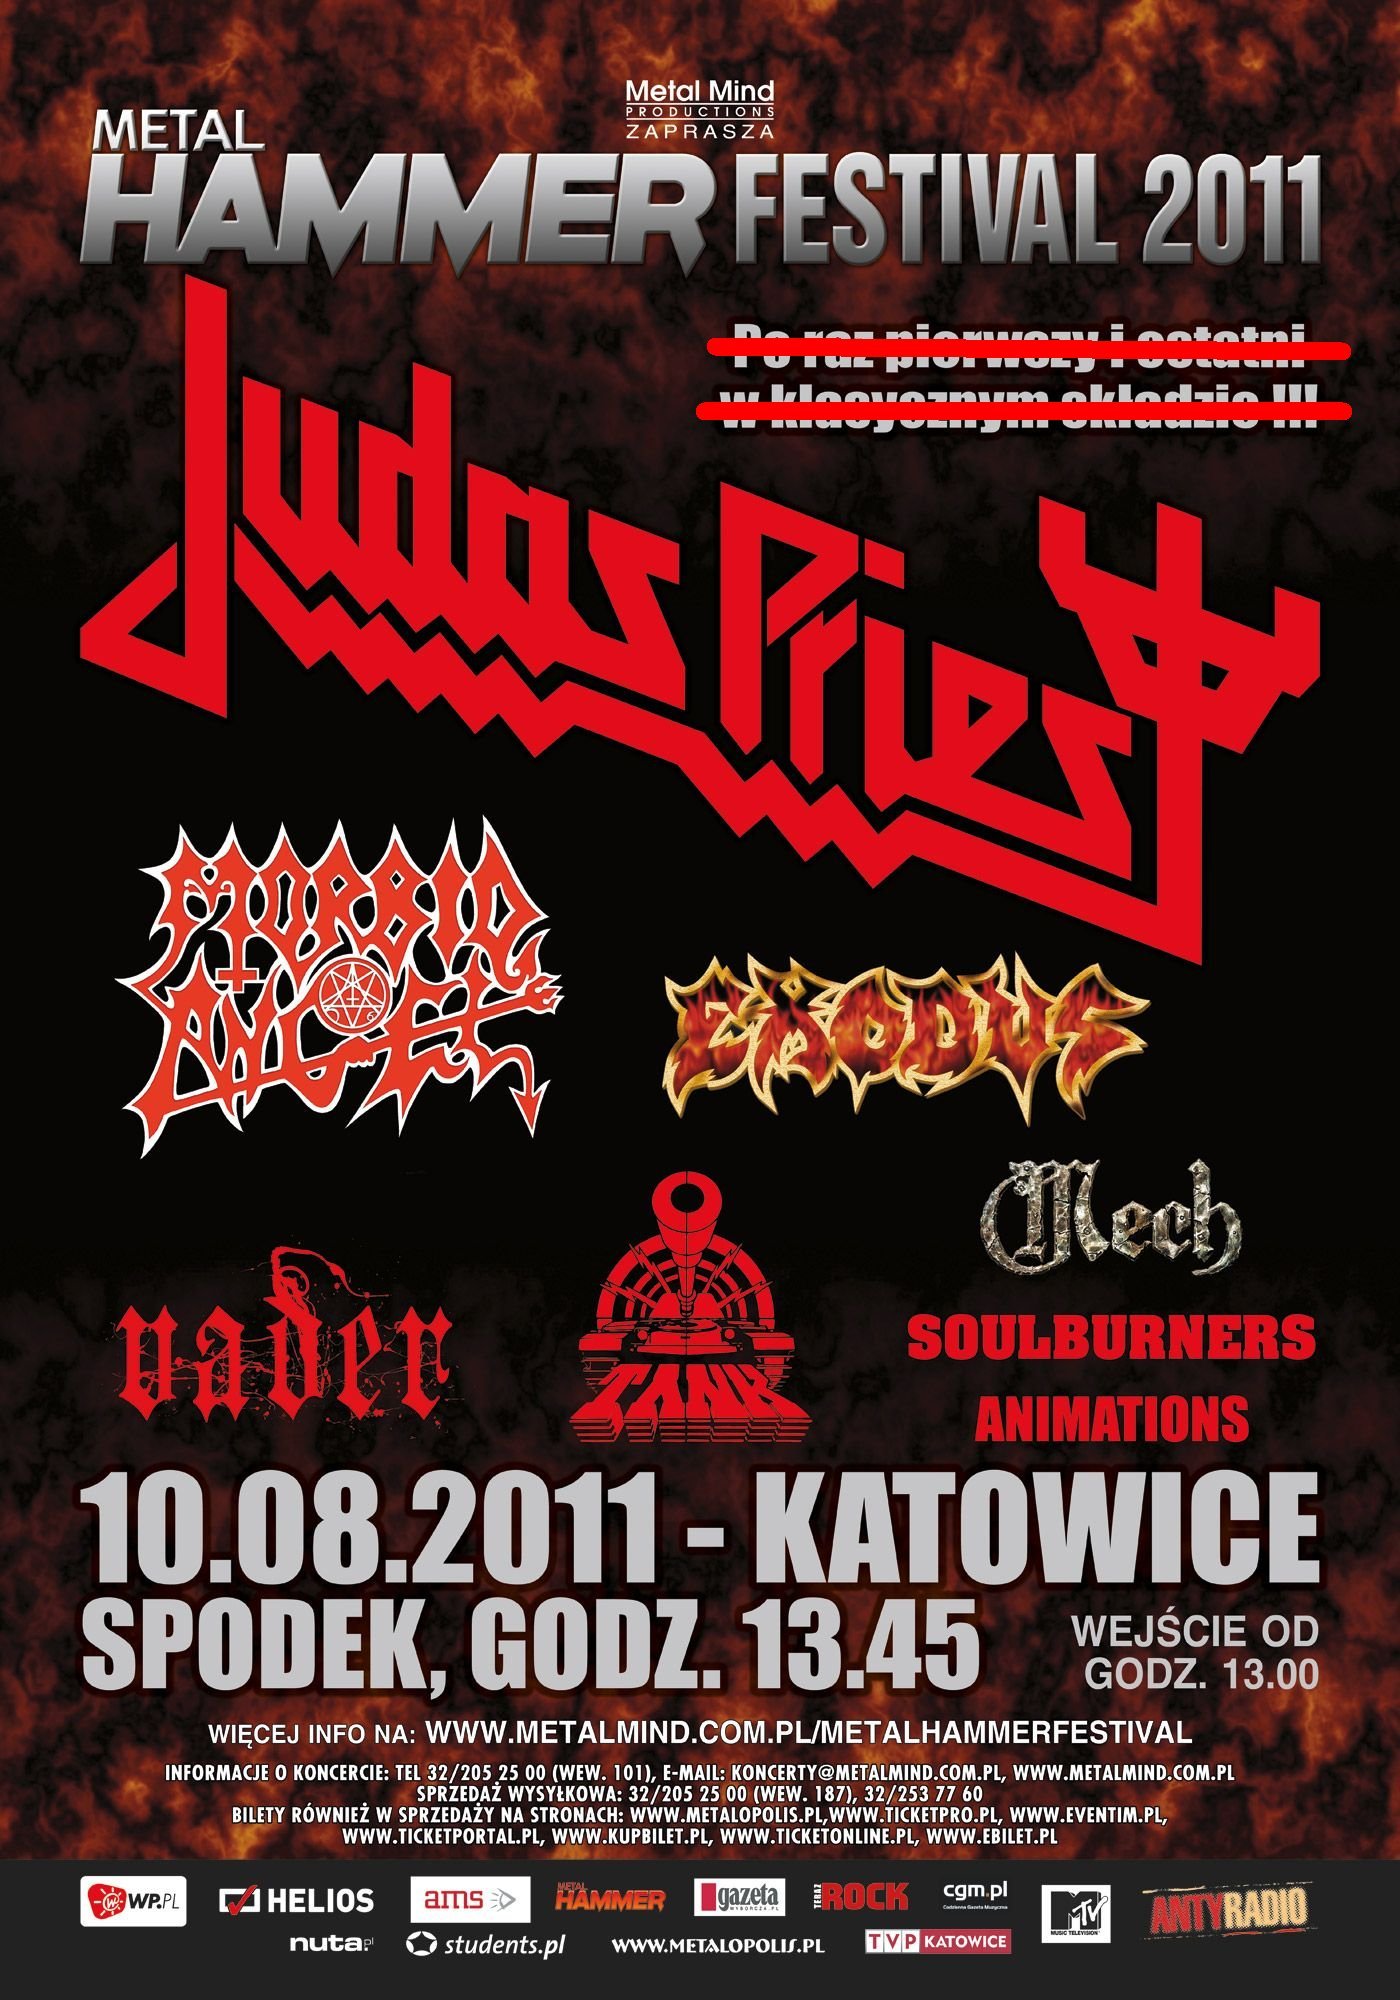 Metal Hammer Festival 2011 at Spodek (Katowice) on 10 Aug 2011 | Last.fm